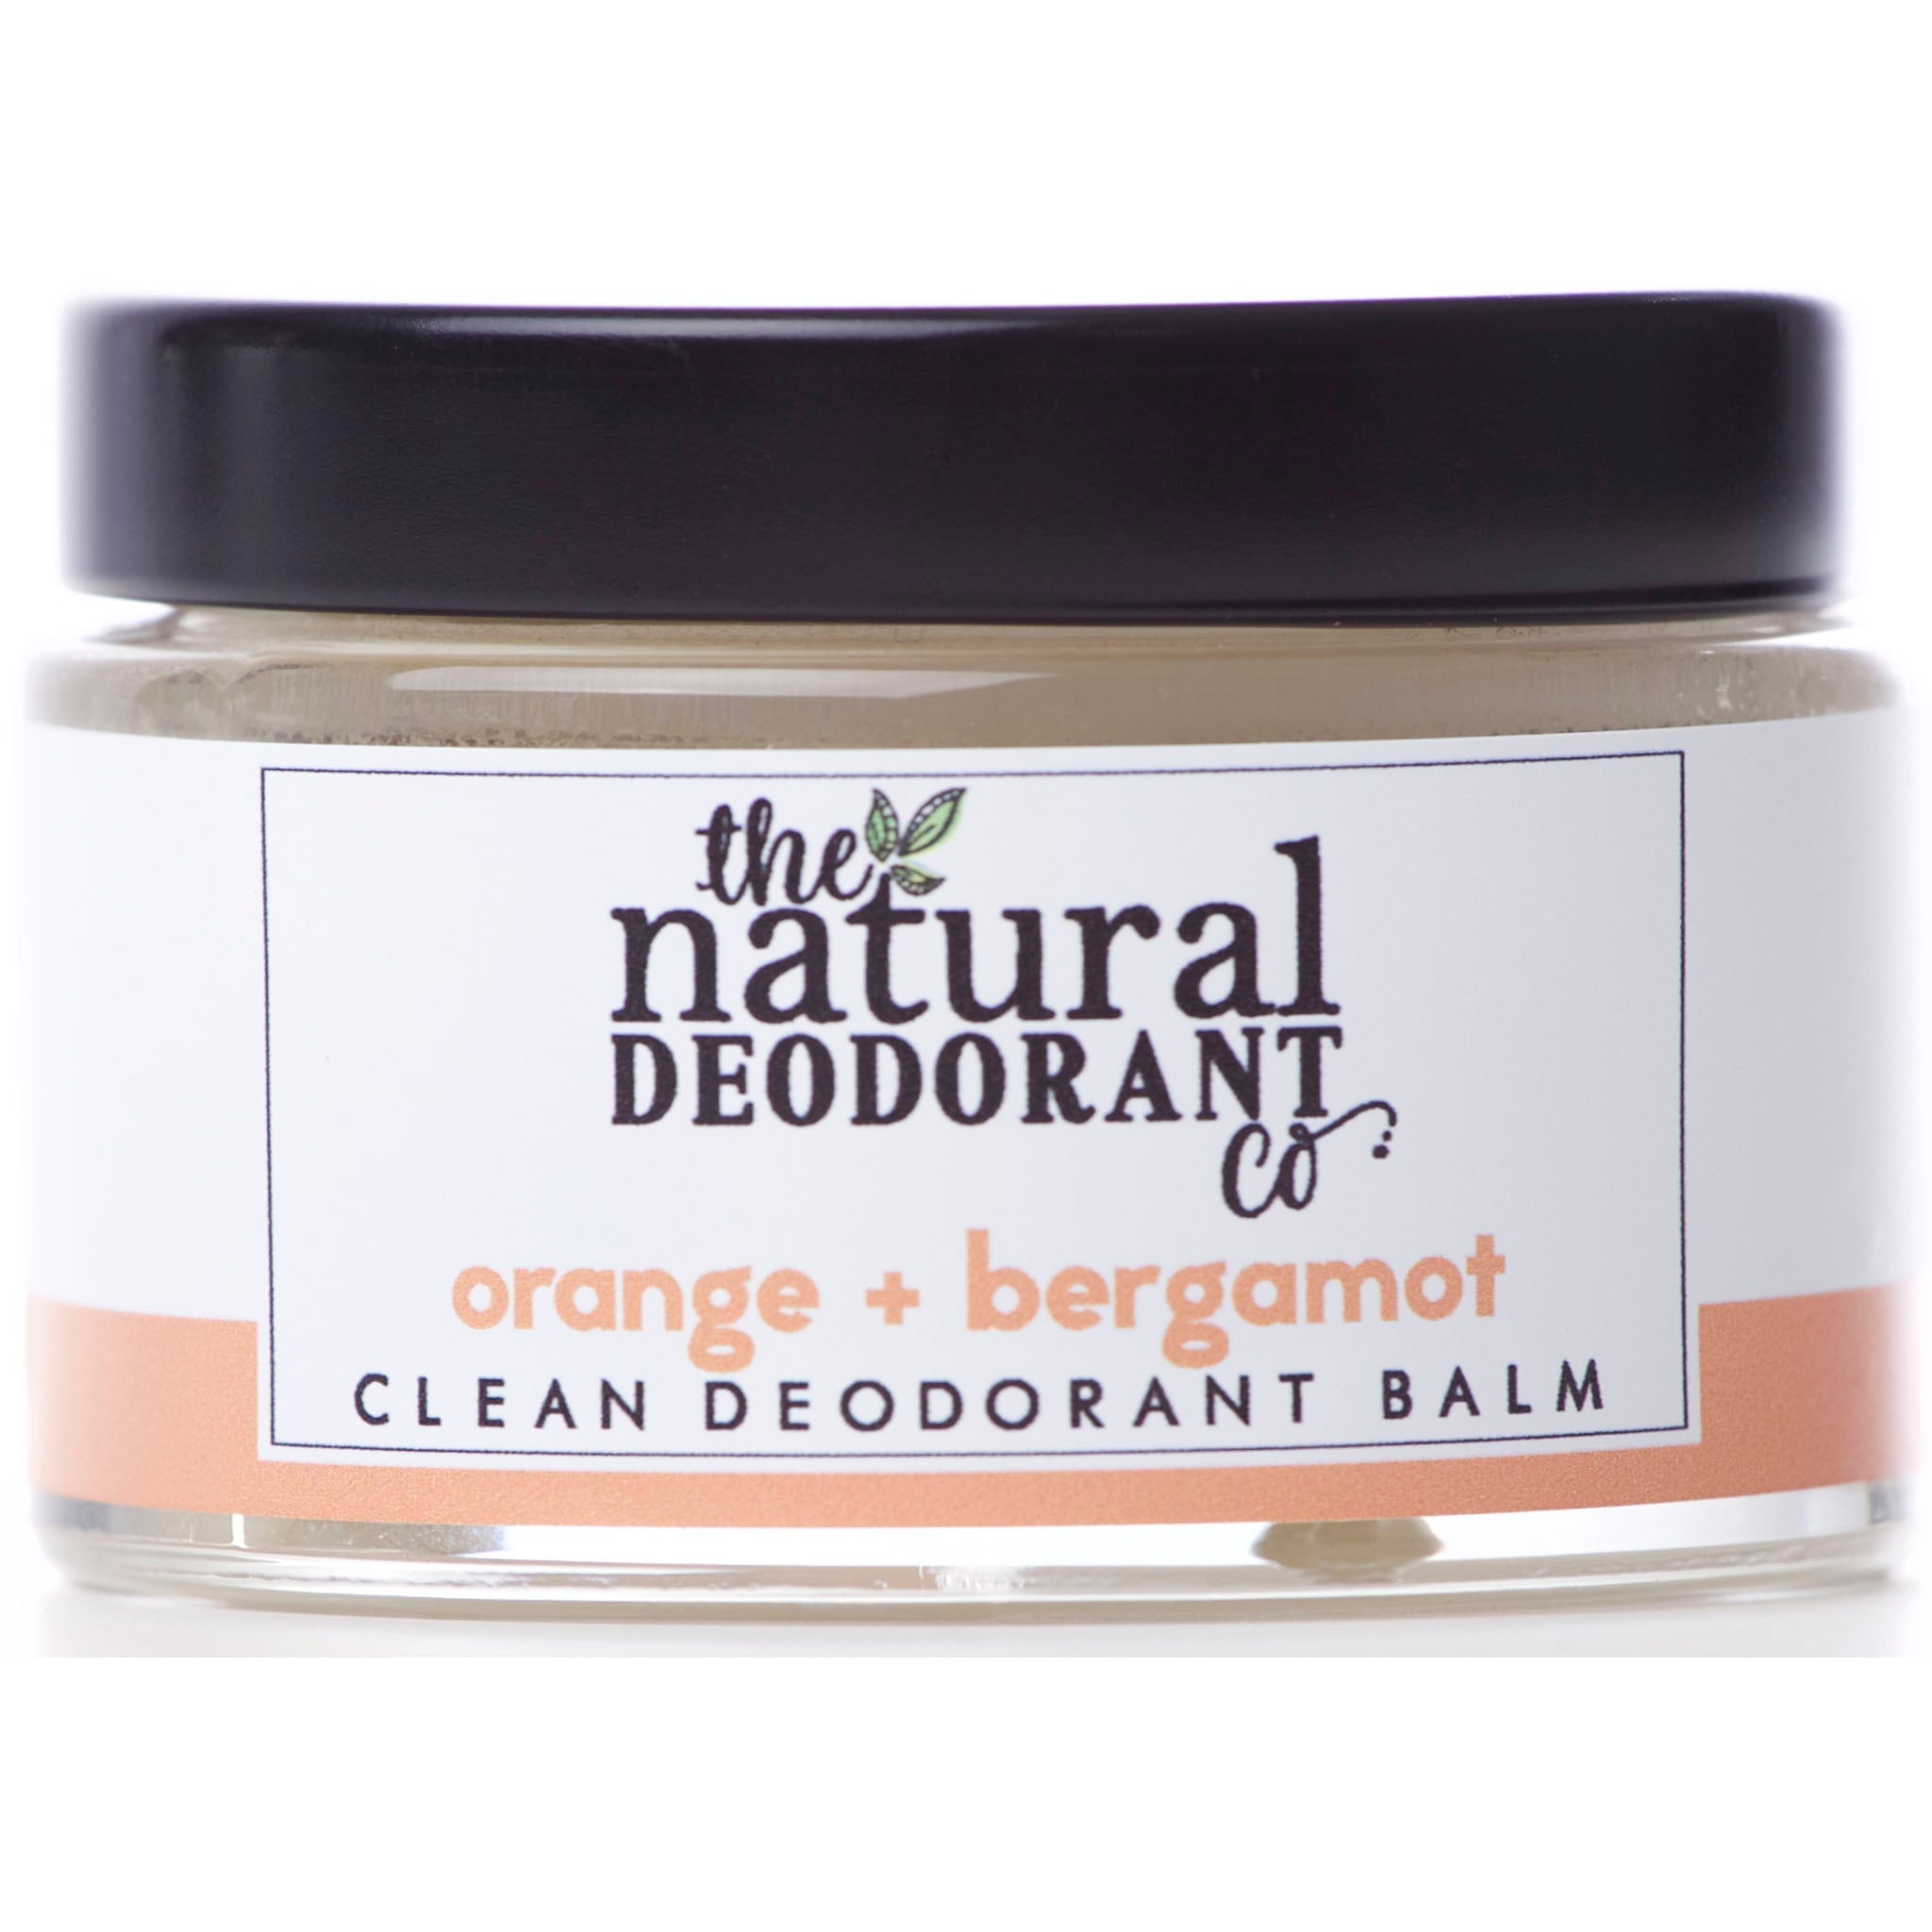 Clean Deodorant Balm | Orange + Bergamot